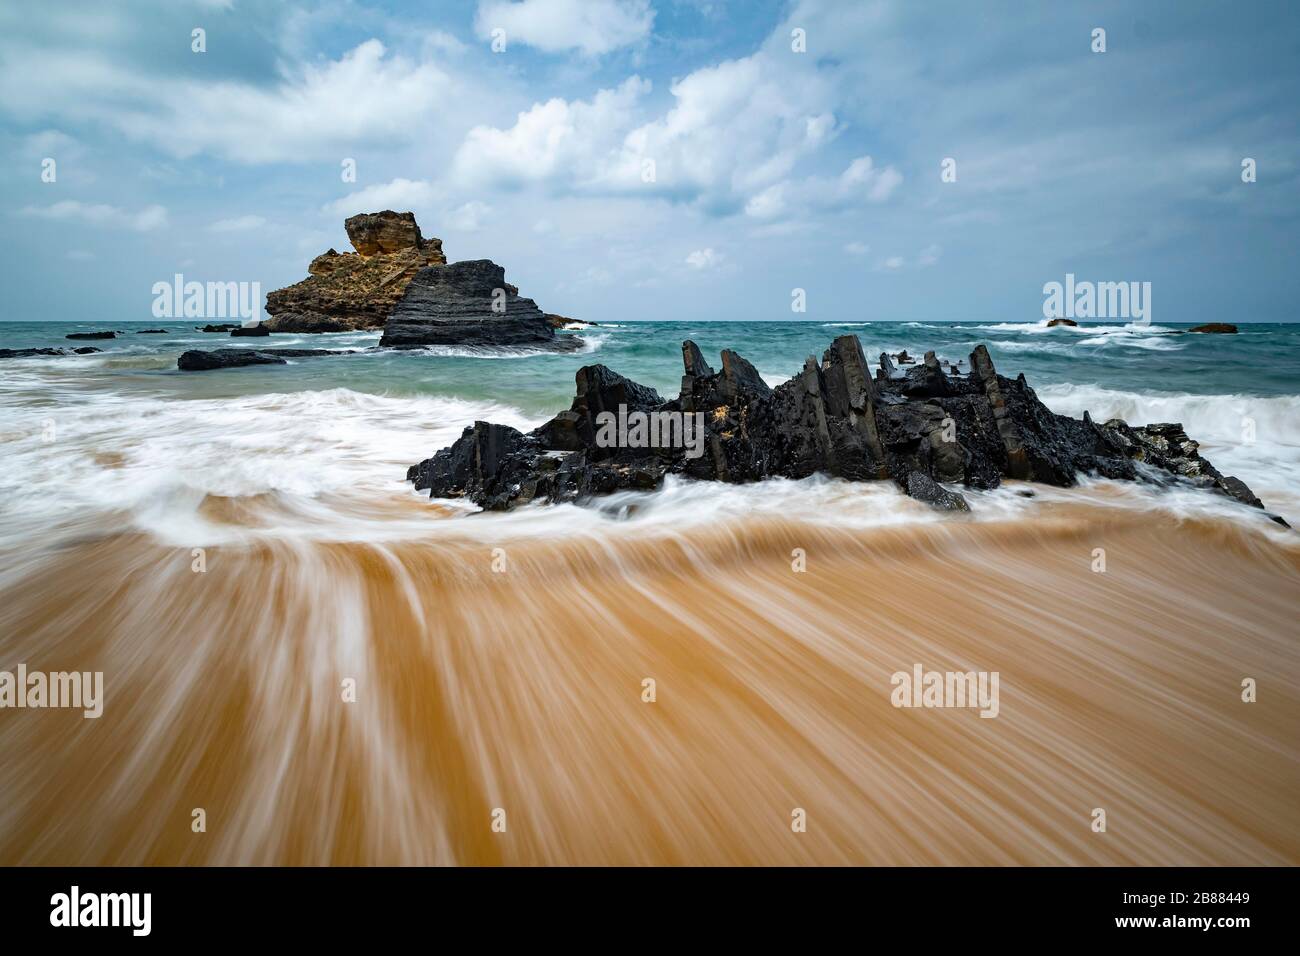 L'acqua che scorre dietro forma un bel modello sulla spiaggia di sabbia; costa atlantica; Algarve; Portogallo Foto Stock